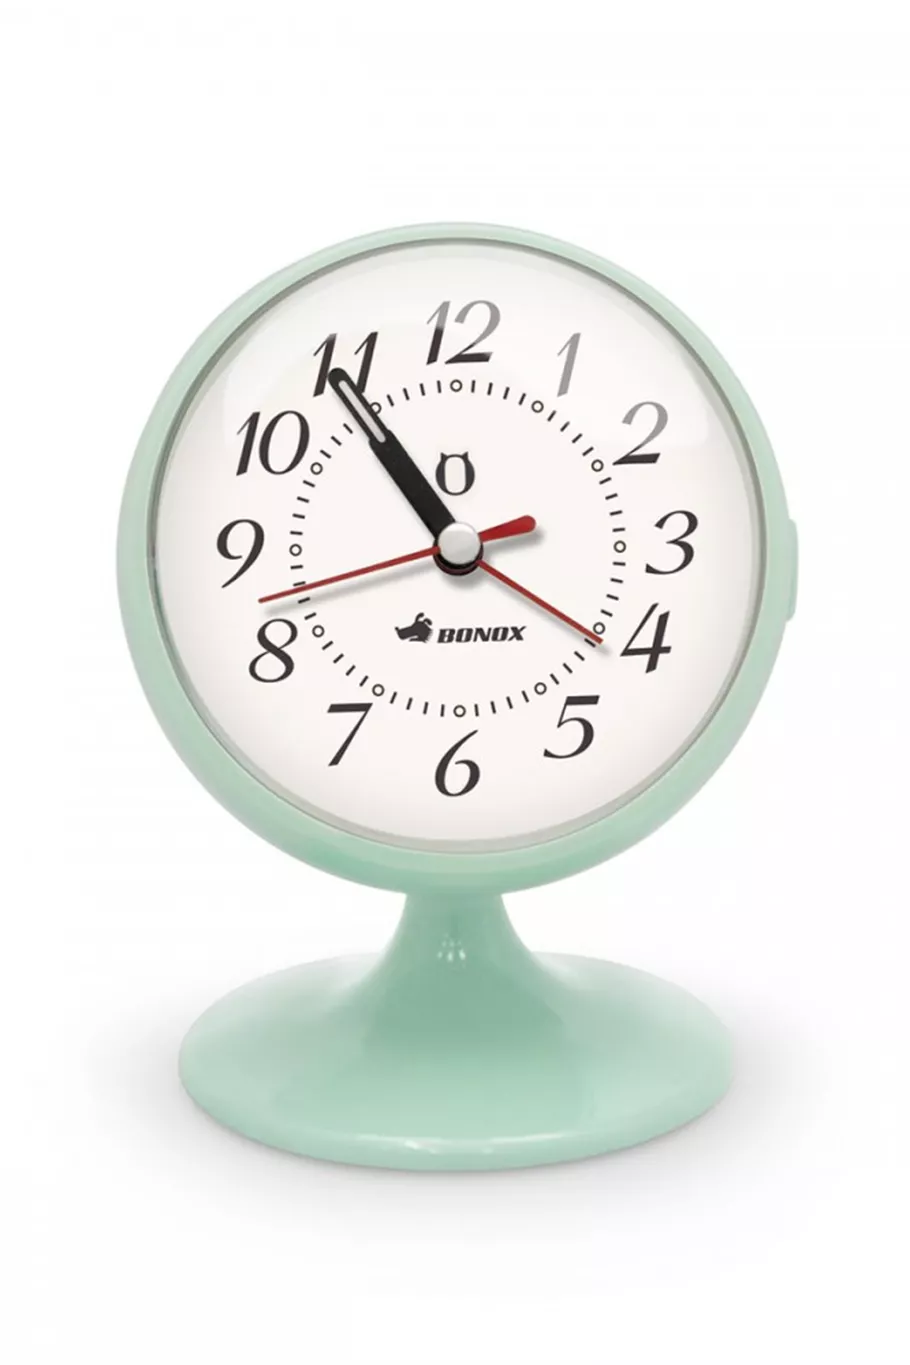 Reloj despertador de Gato Store, ideal para ponerte las alarmas pomodoro y administrar mejor tu tiempo, $1990 en @gatostore, con Club La Nación tenés 20% off.